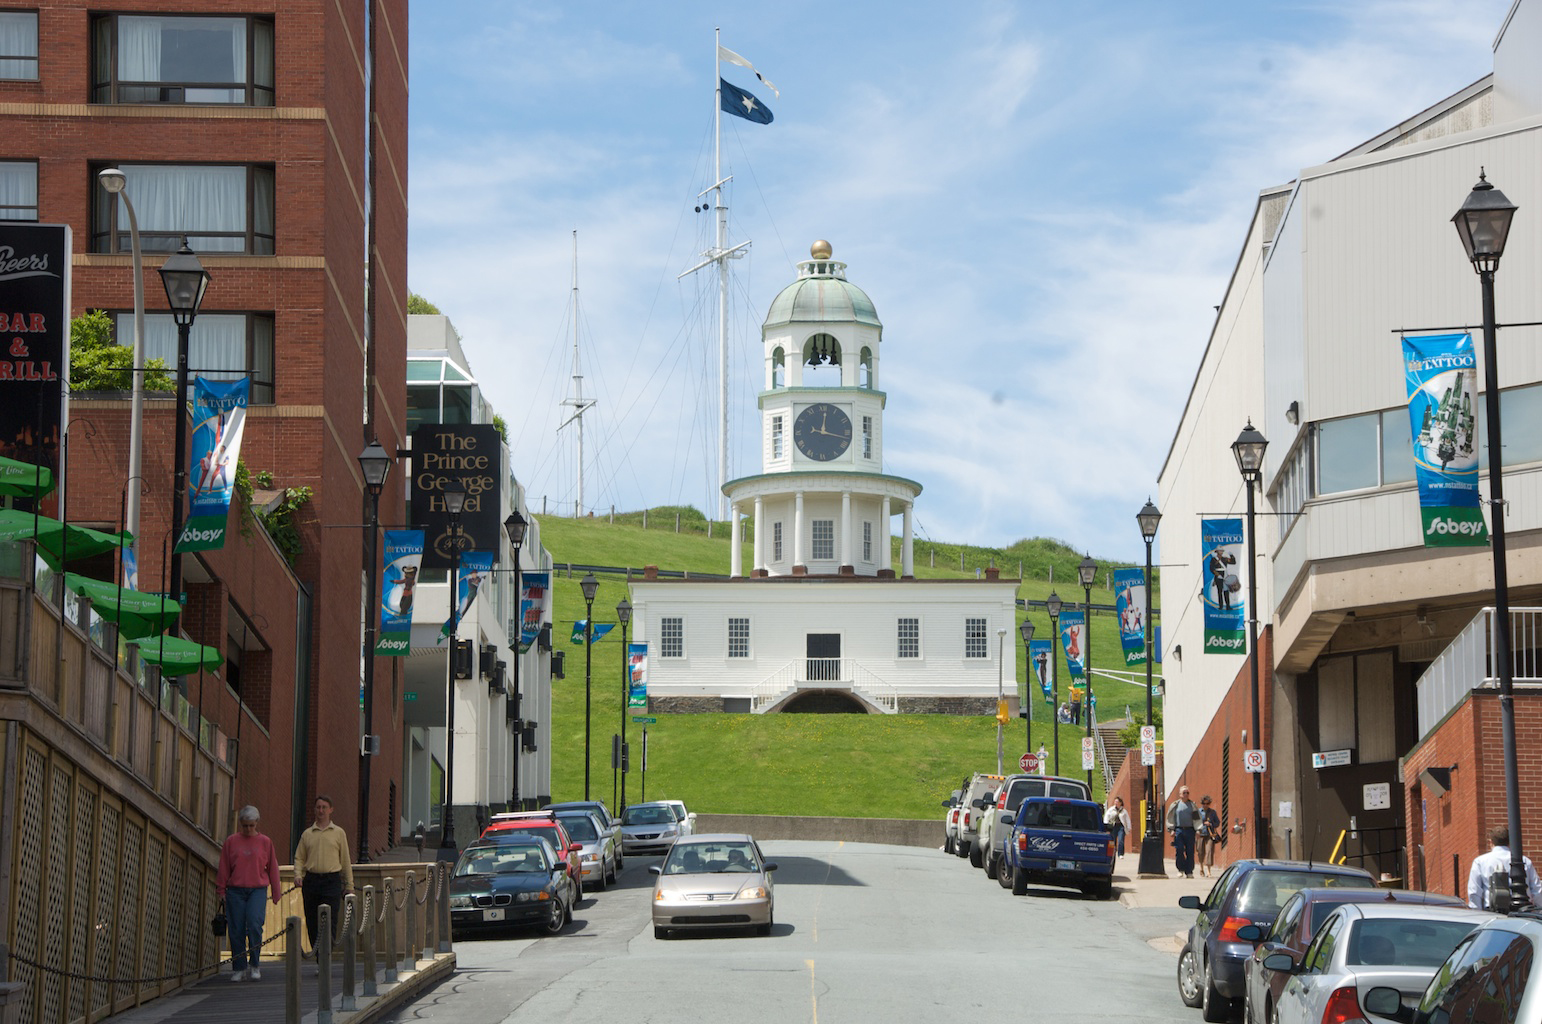 Reloj de la ciudad de Halifax en la base de Citadel Hill, Prince George Hotel